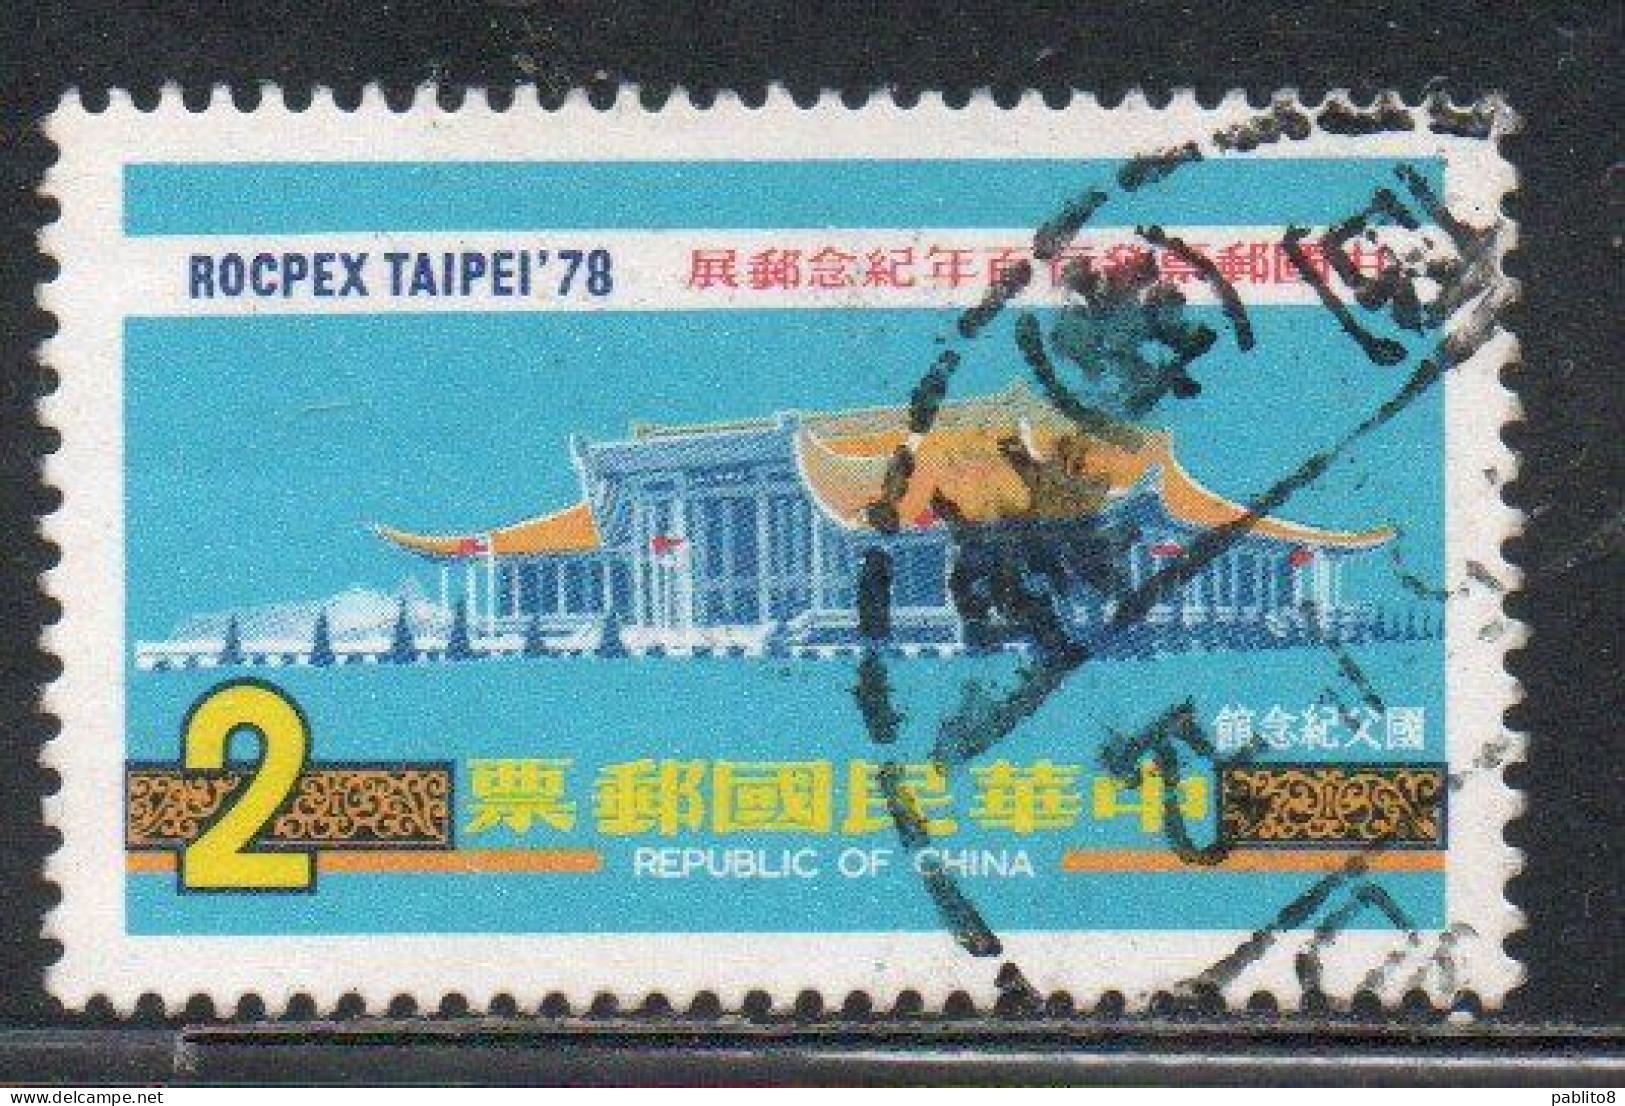 CHINA REPUBLIC CINA TAIWAN FORMOSA 1978 ROCPEX78 PHILATELIC EXHIBITION SUN YAT-SEN MEMORIAL HALL 2$ USED USATO OBLITERE' - Usati